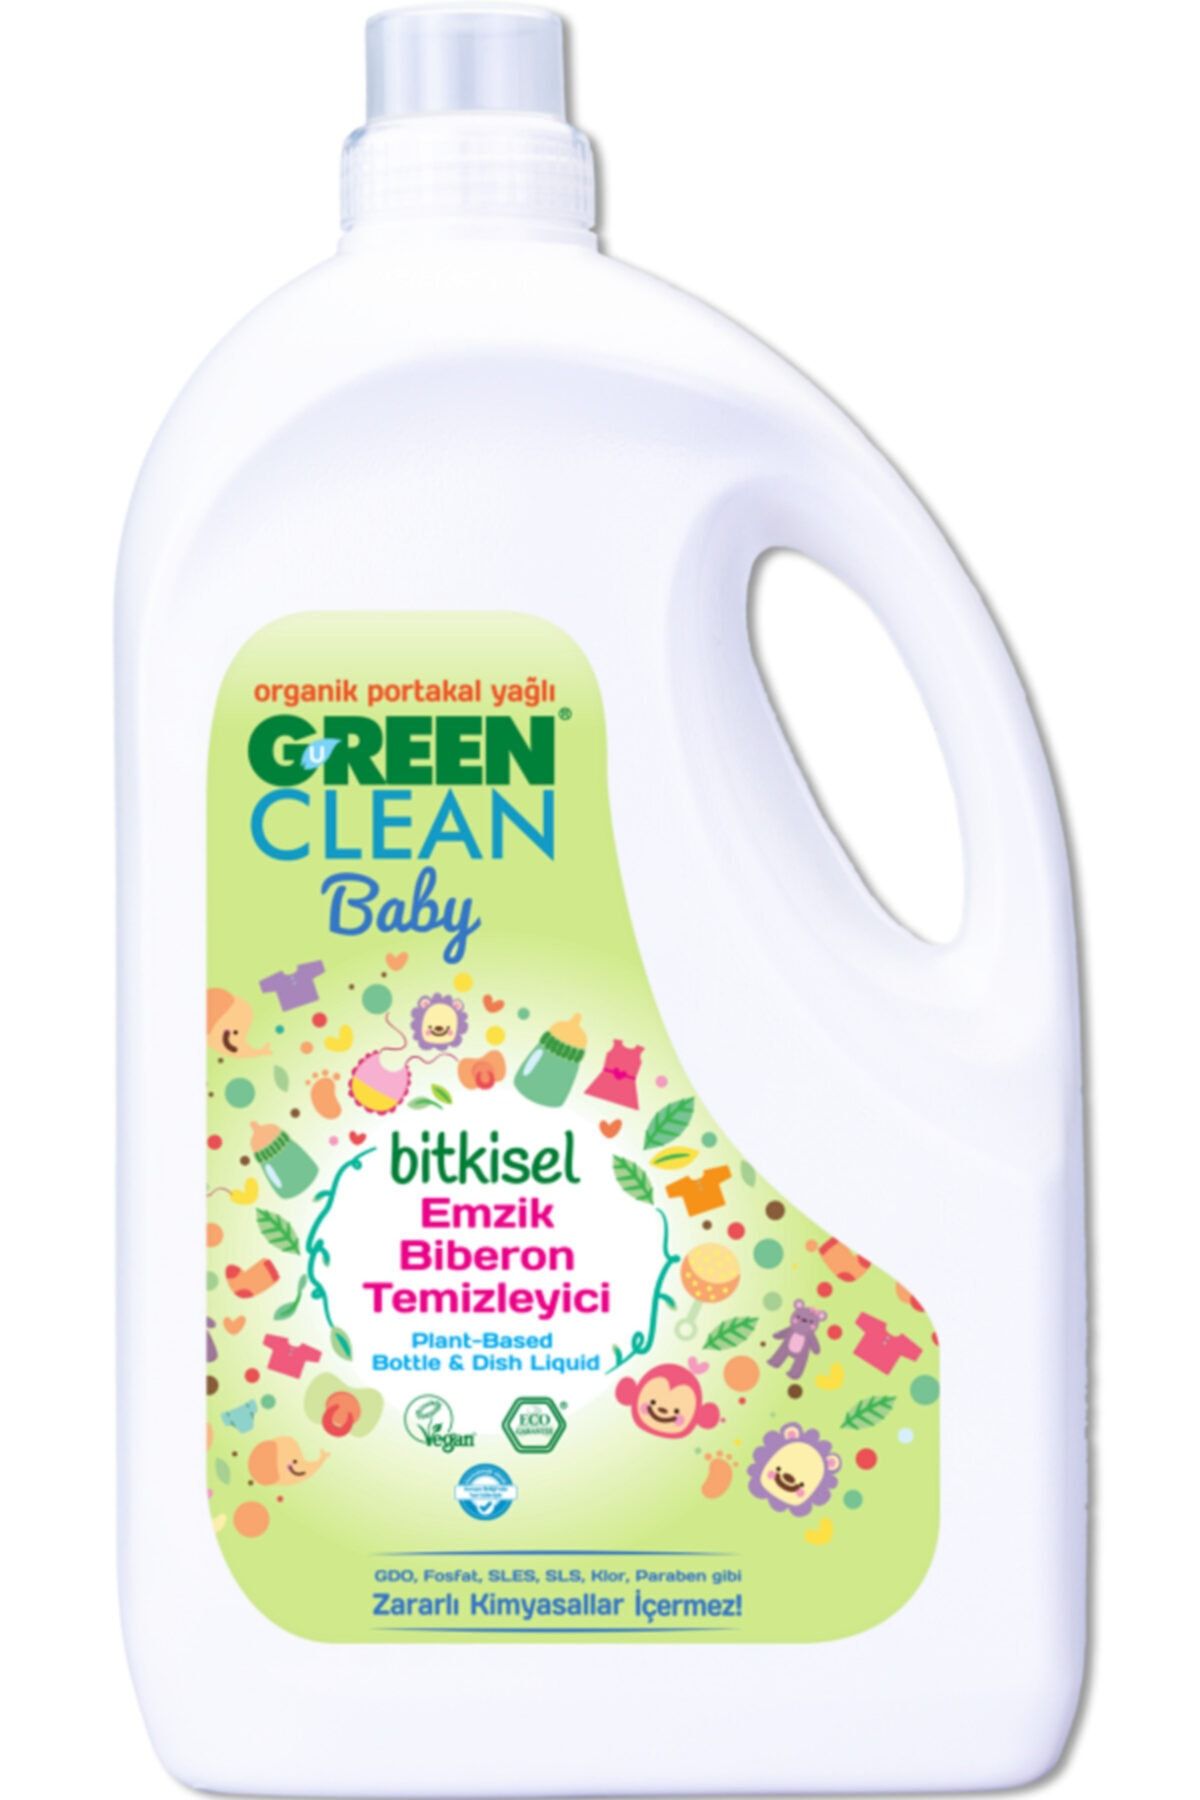 Green Clean Baby Bitkisel Emzik Biberon Temizleyiciorganik Portakal Yağlı2750 ml